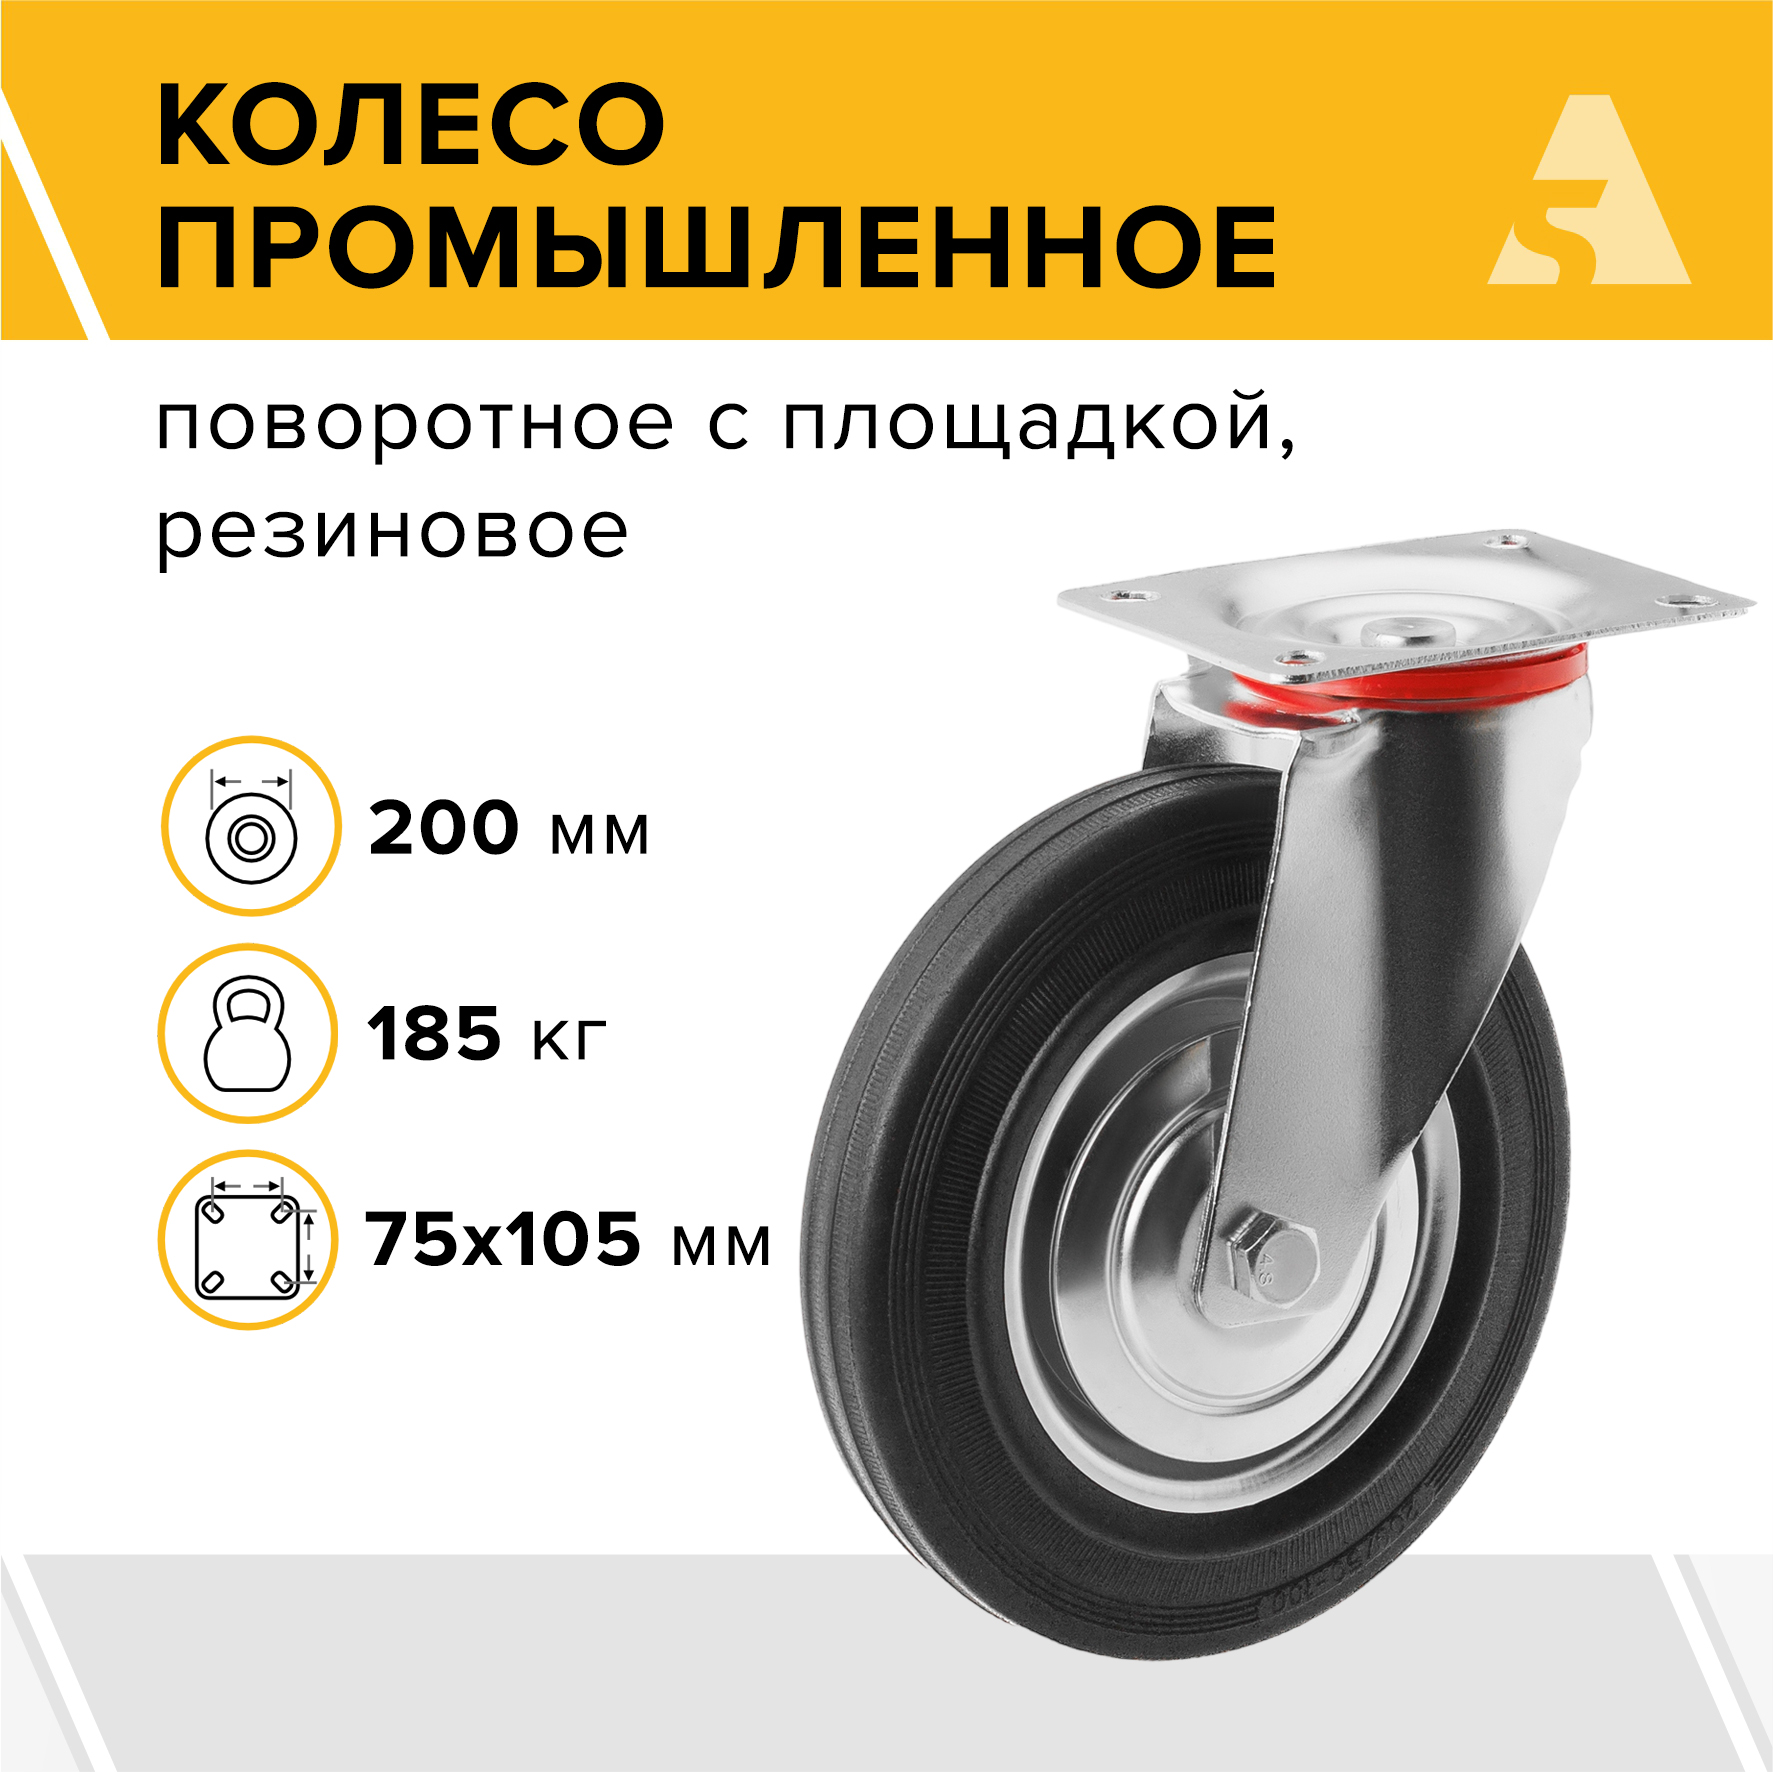 Колесо промышленное А5 SC 80 1000011 промышленное колесо longway